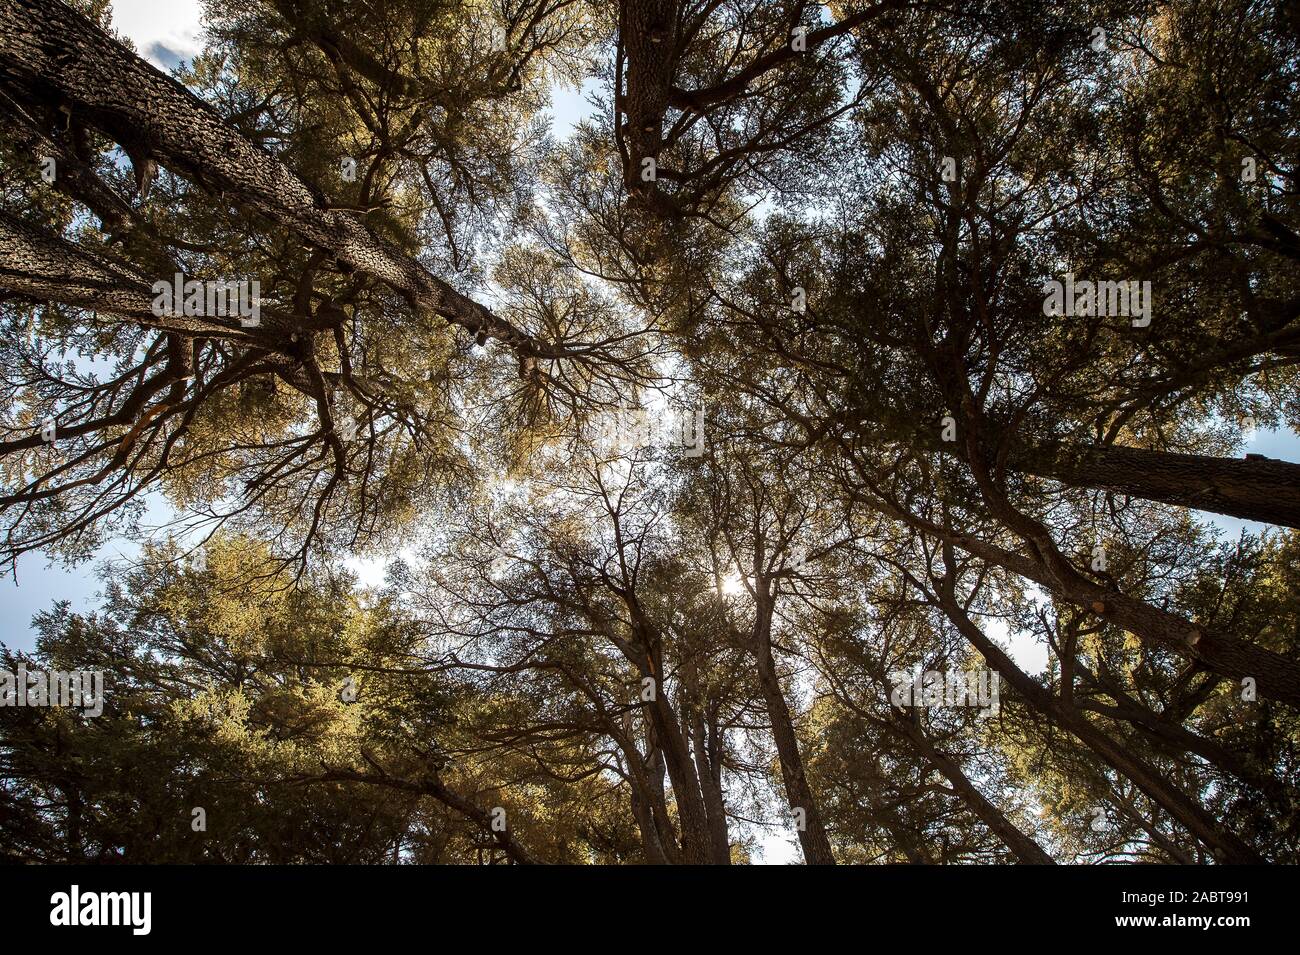 Die Zedern Gottes, in Bsharri, sind einer der letzten Reste des ausgedehnten Wälder des Libanon Zeder, die einst auf dem Berg Leban vorwärtsgekommen Stockfoto